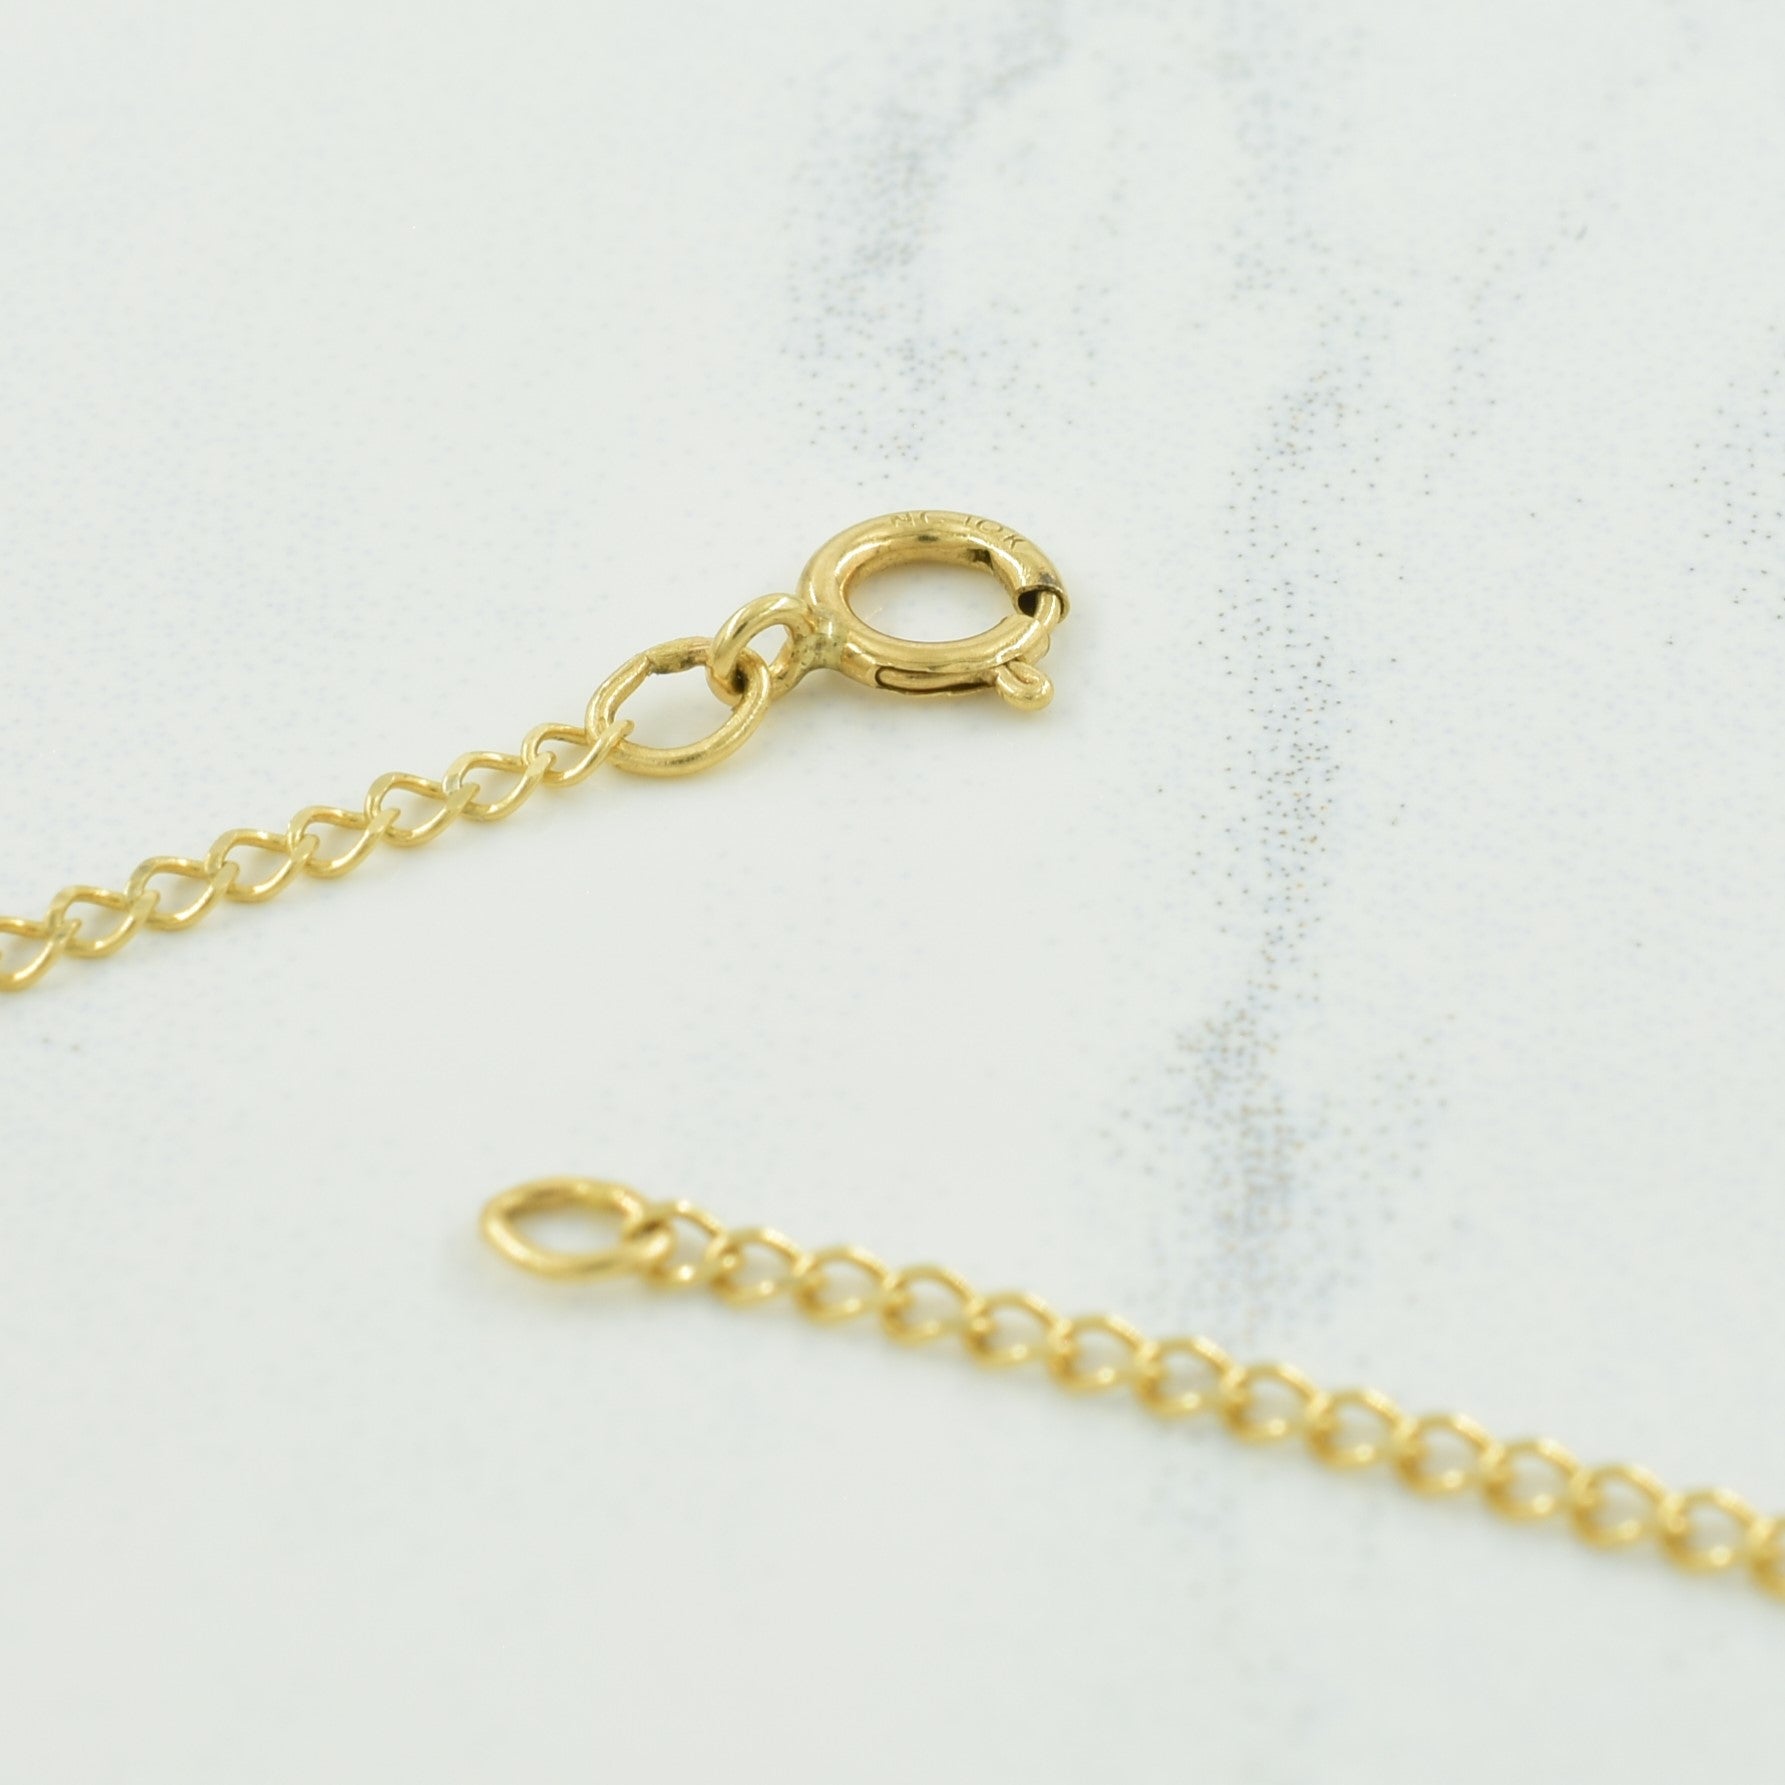 Iolite & Diamond Pendant Necklace | 0.36ctw, 0.01ctw | 17.50